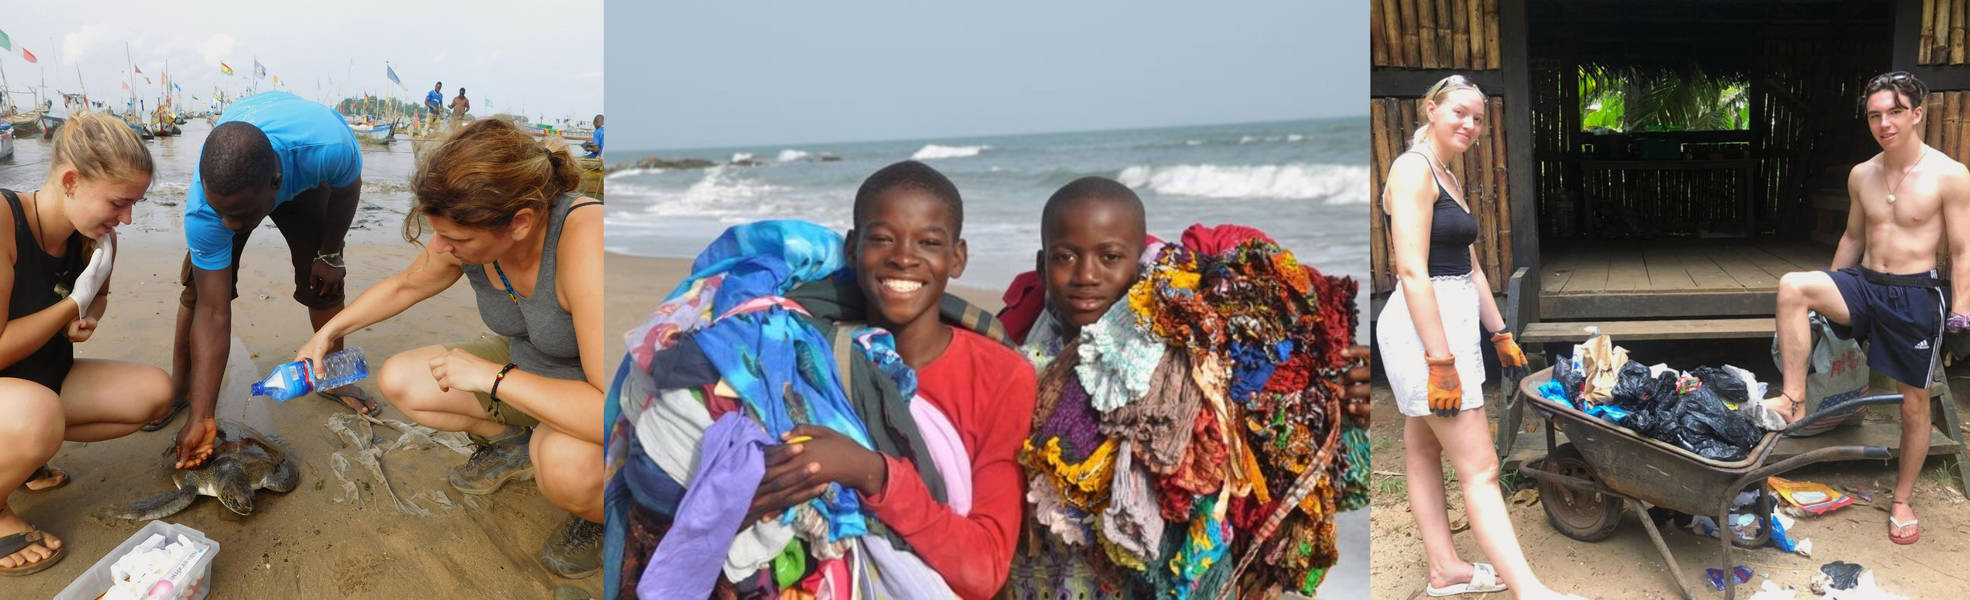 Freiwilligenarbeit im Naturschutz am Strand in Ghana 